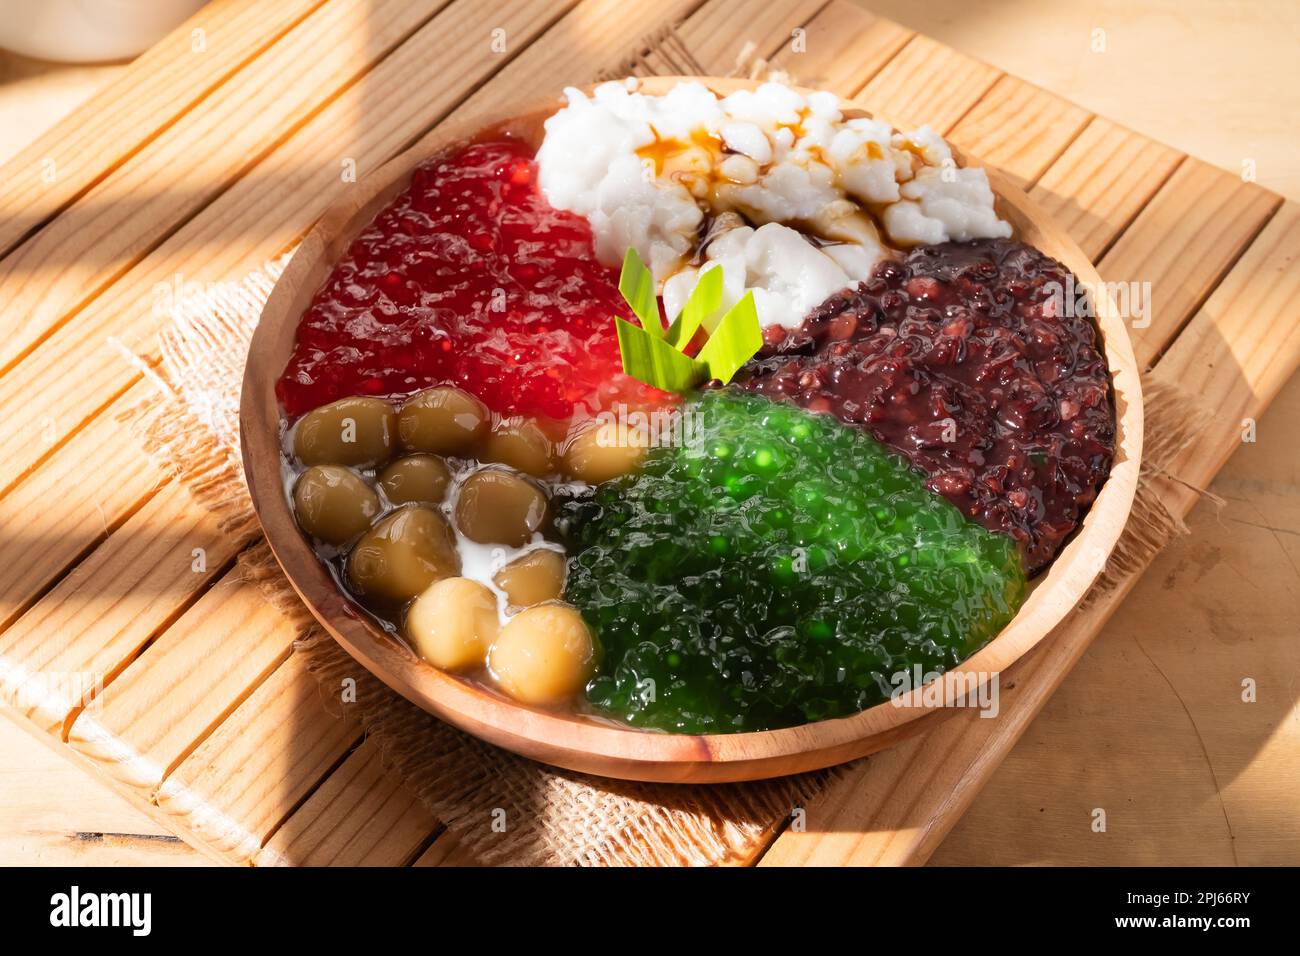 Porridge de perle ou sagou de perle. Desserts indonésiens populaires servis sur des assiettes en bois aux saveurs variées Banque D'Images